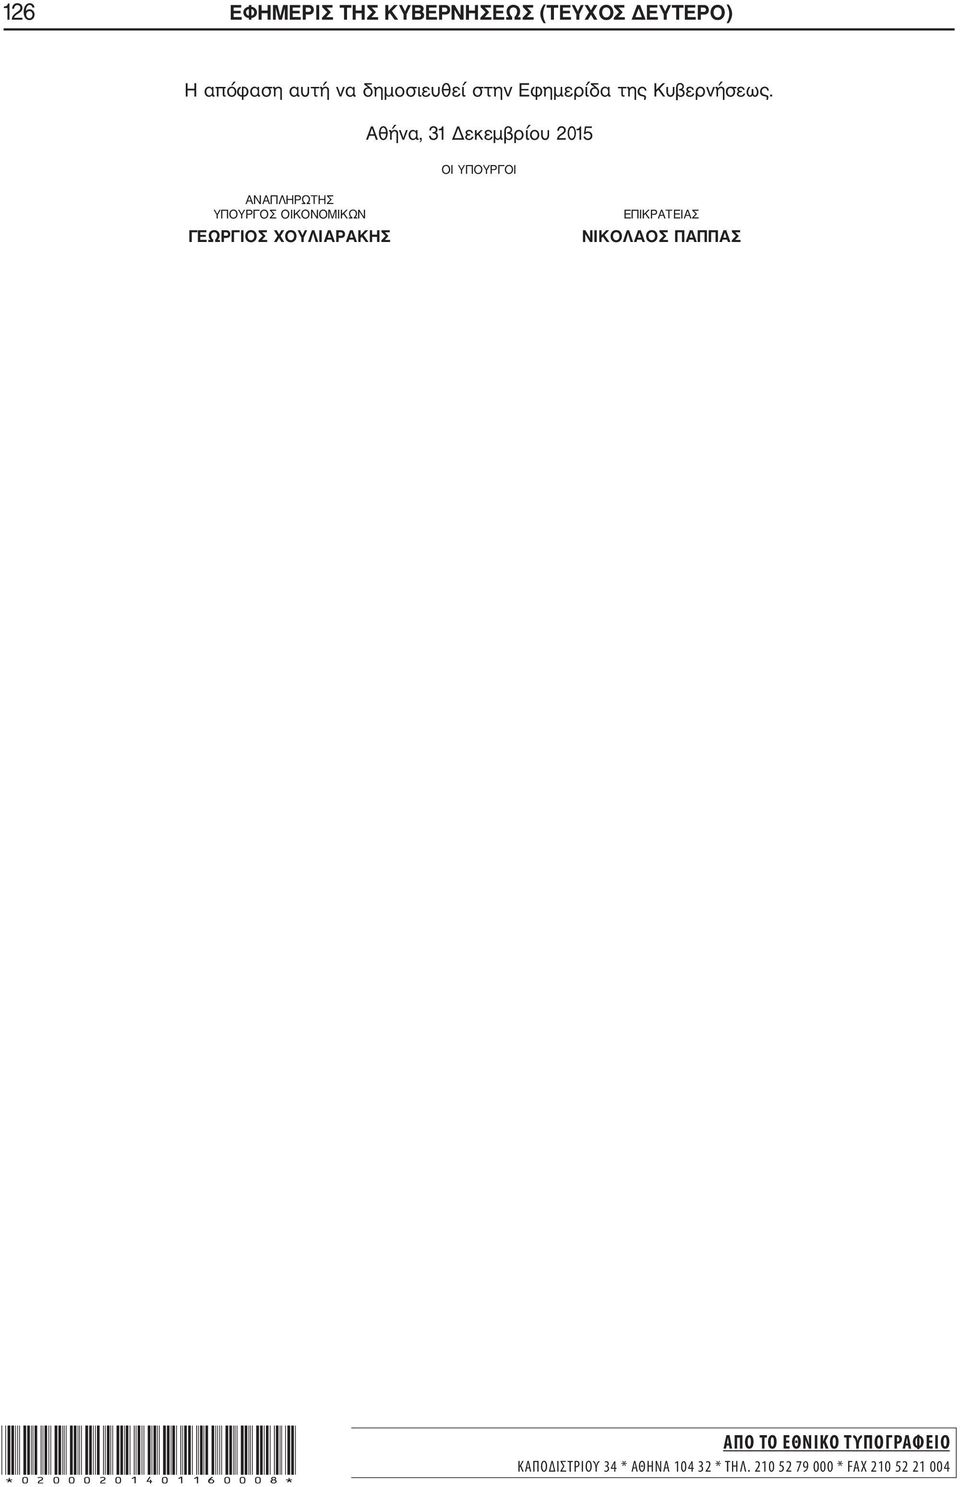 Αθήνα, 31 Δεκεμβρίου 2015 ΟΙ ΥΠΟΥΡΓΟΙ ΑΝΑΠΛΗΡΩΤΗΣ ΥΠΟΥΡΓΟΣ ΟΙΚΟΝΟΜΙΚΩΝ ΓΕΩΡΓΙΟΣ